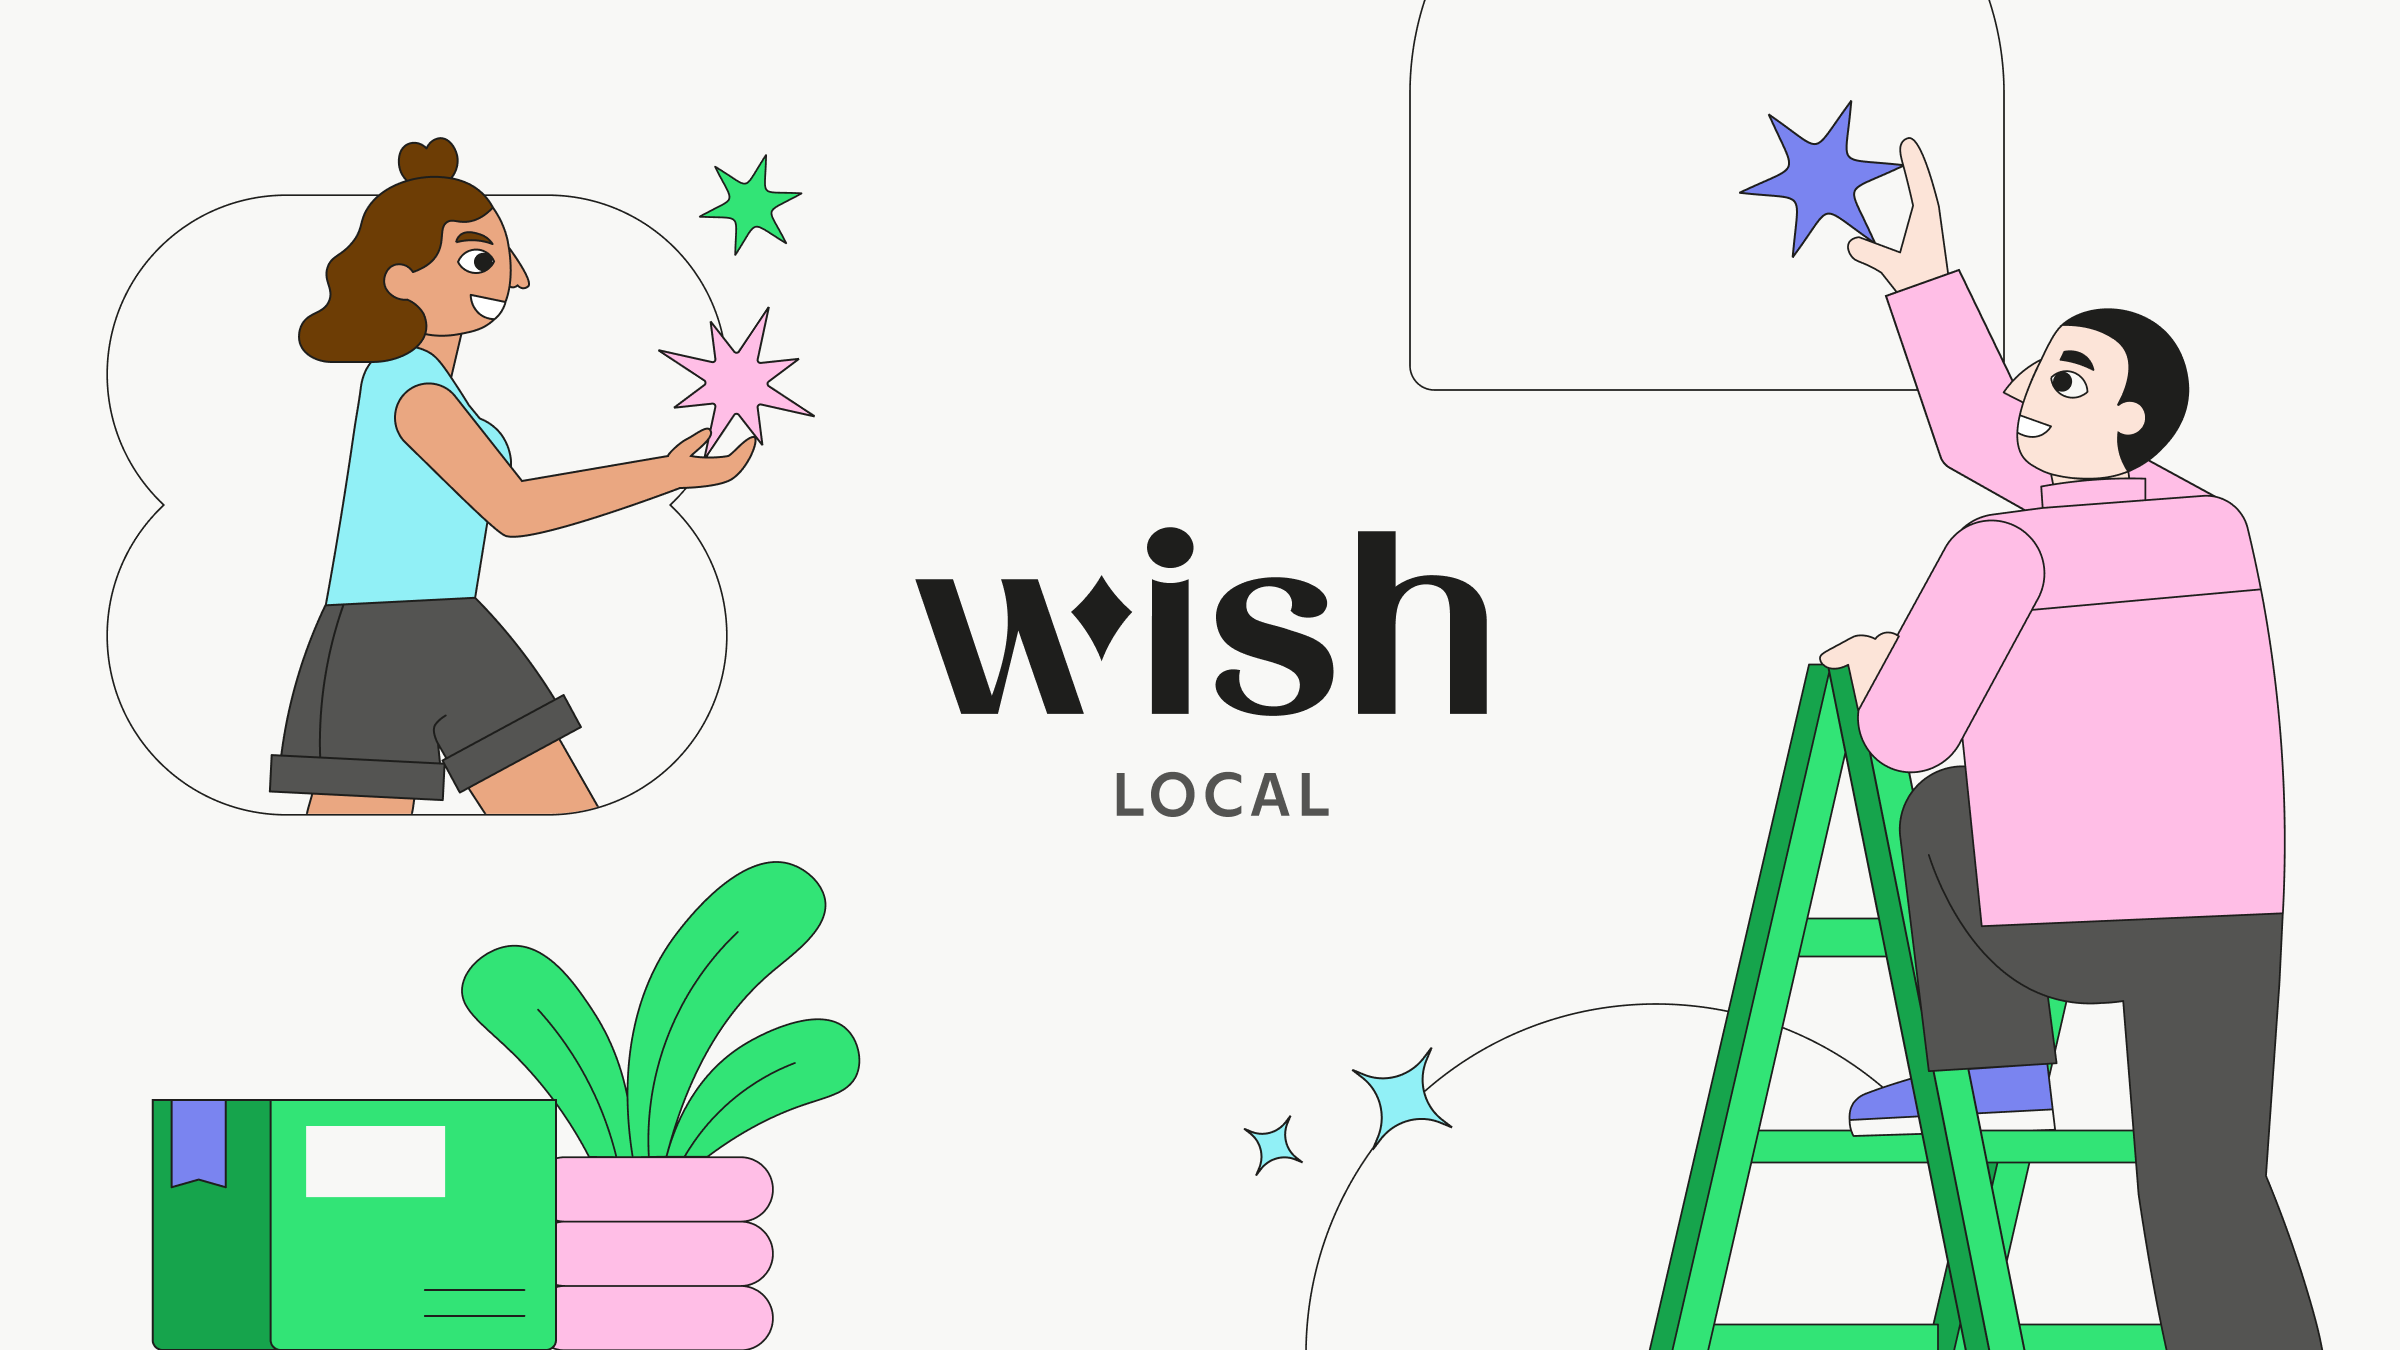 ¿Qué está pasando en Wish y en Wish Local?